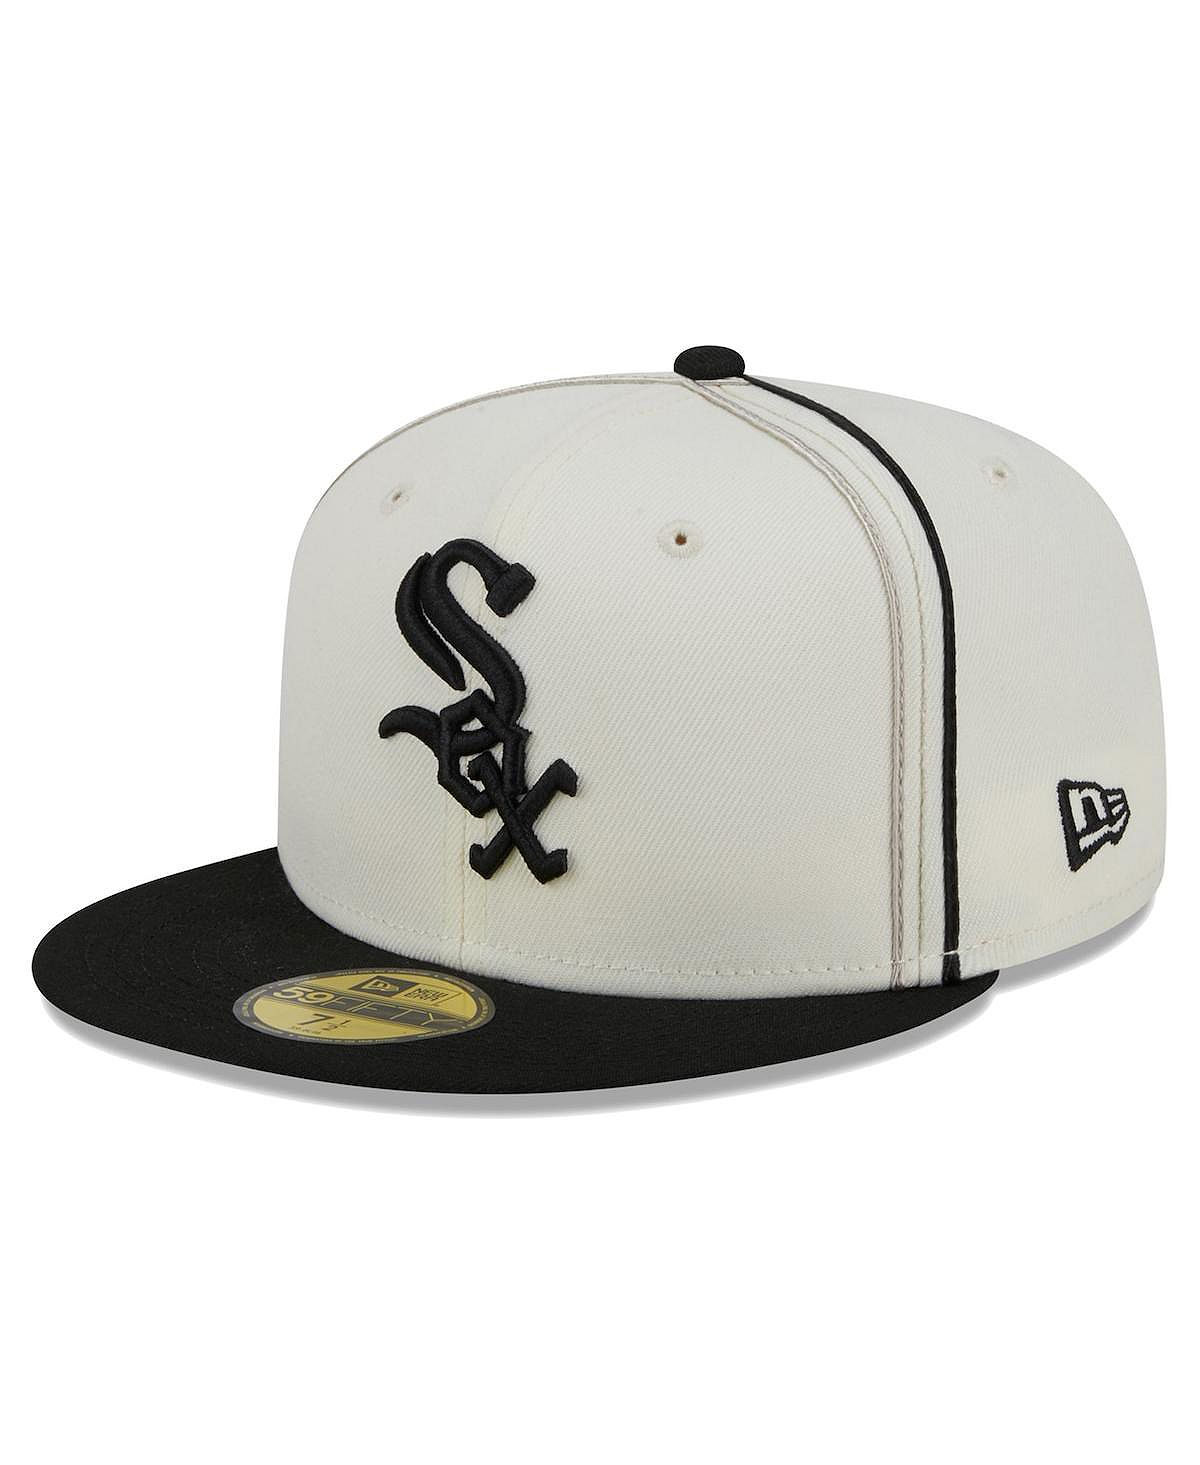 Мужская кремовая, черная шляпа Chicago White Sox Chrome Sutash 59FIFTY. New Era